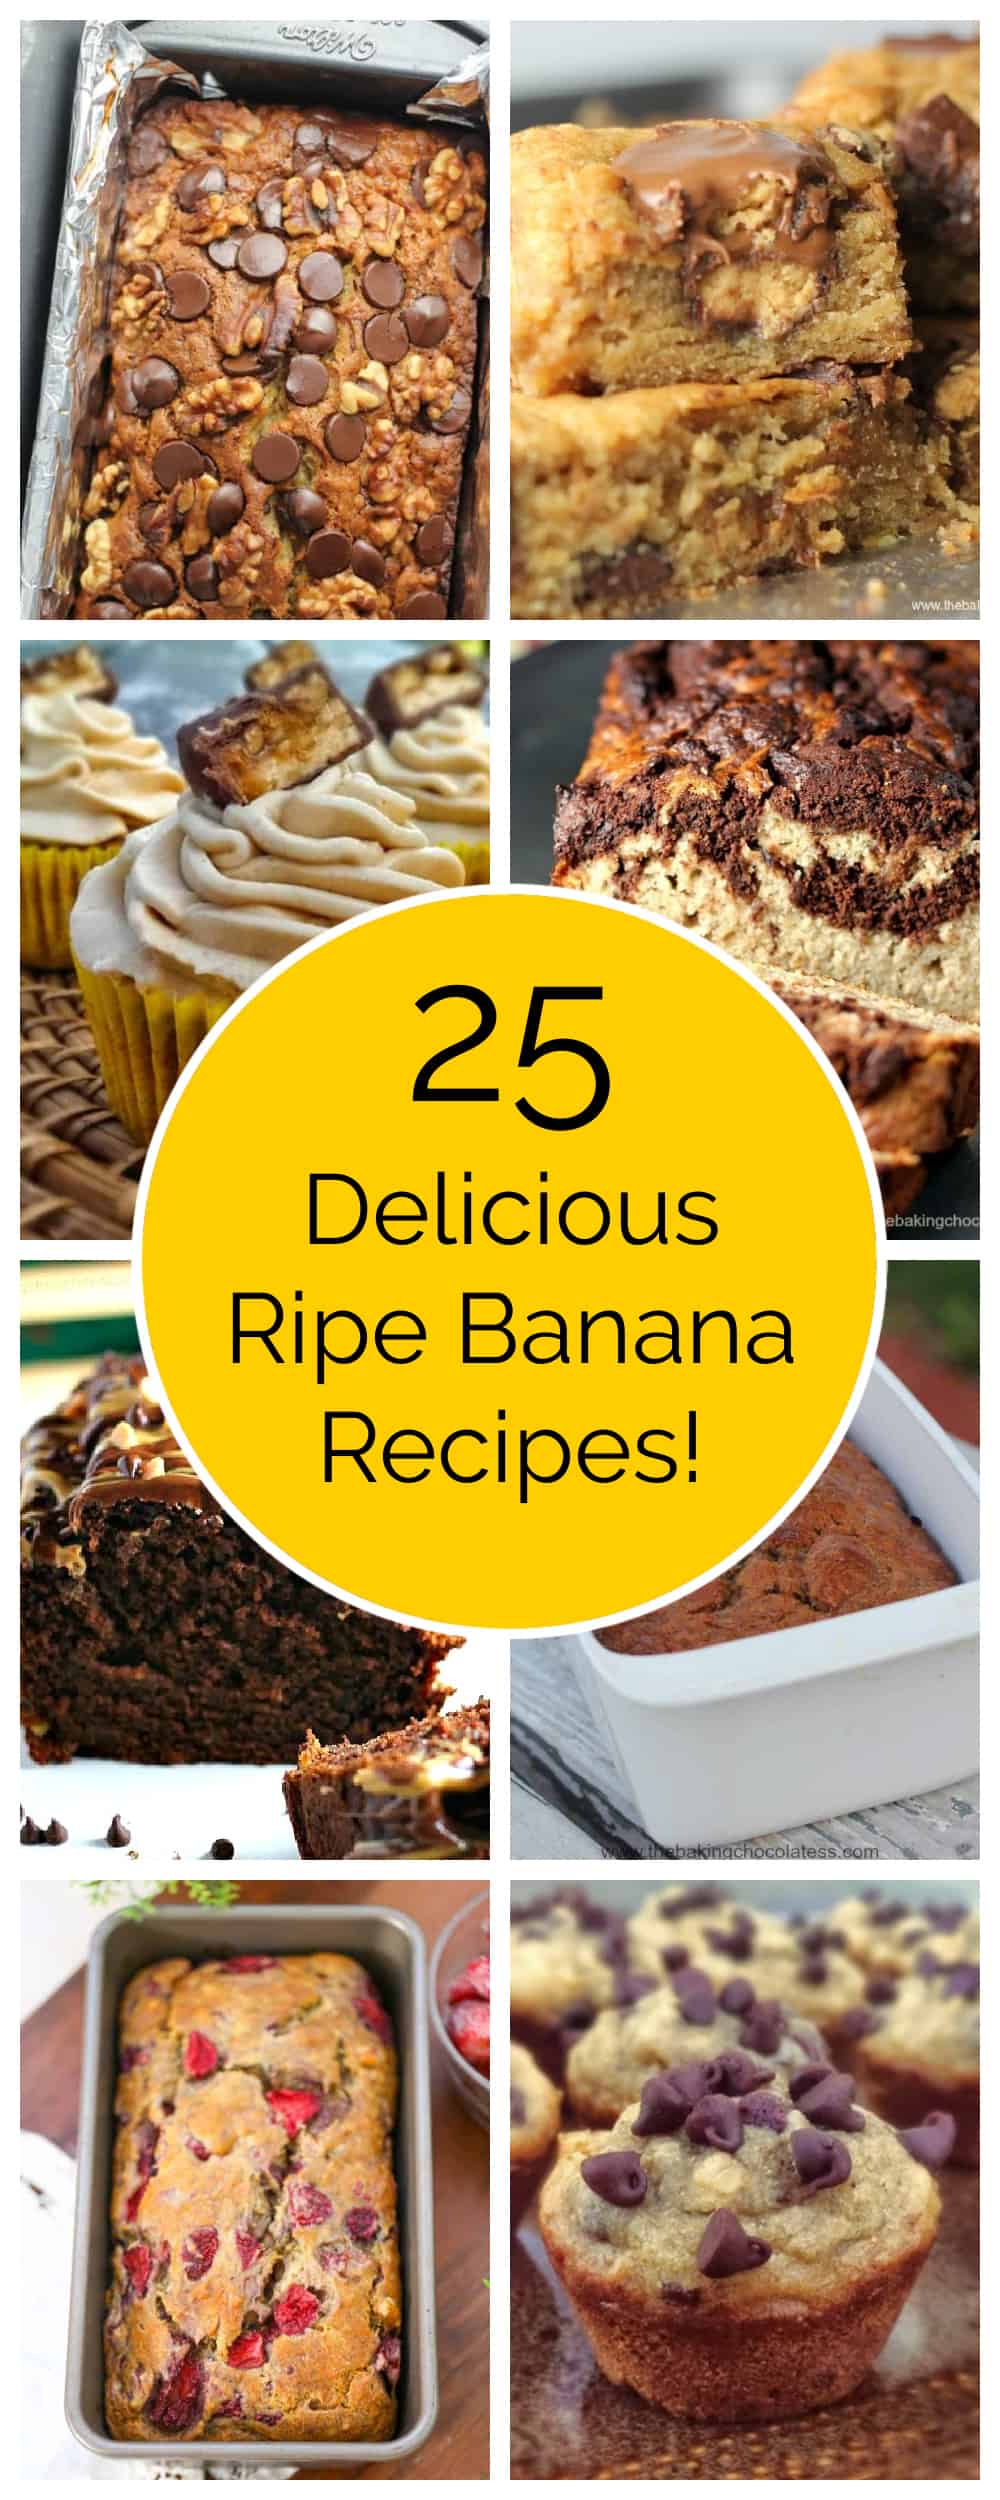 25 Banana Recipes for Ripe Bananas!